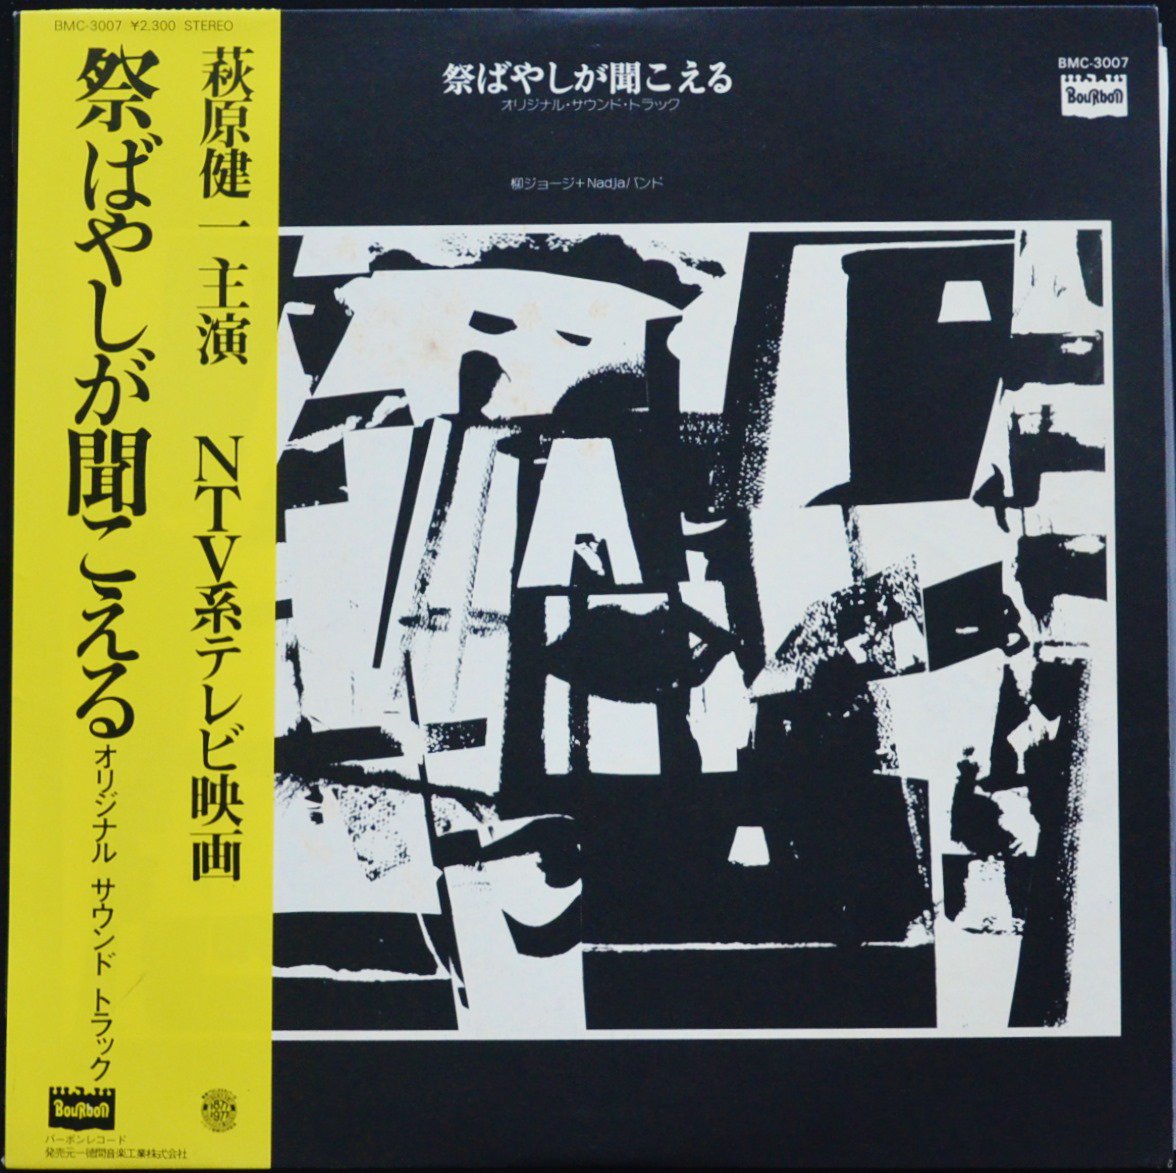 柳ジョージ & NADJAバンド / 祭ばやしが聞こえる (オリジナル・サウンド・トラック) (LP)